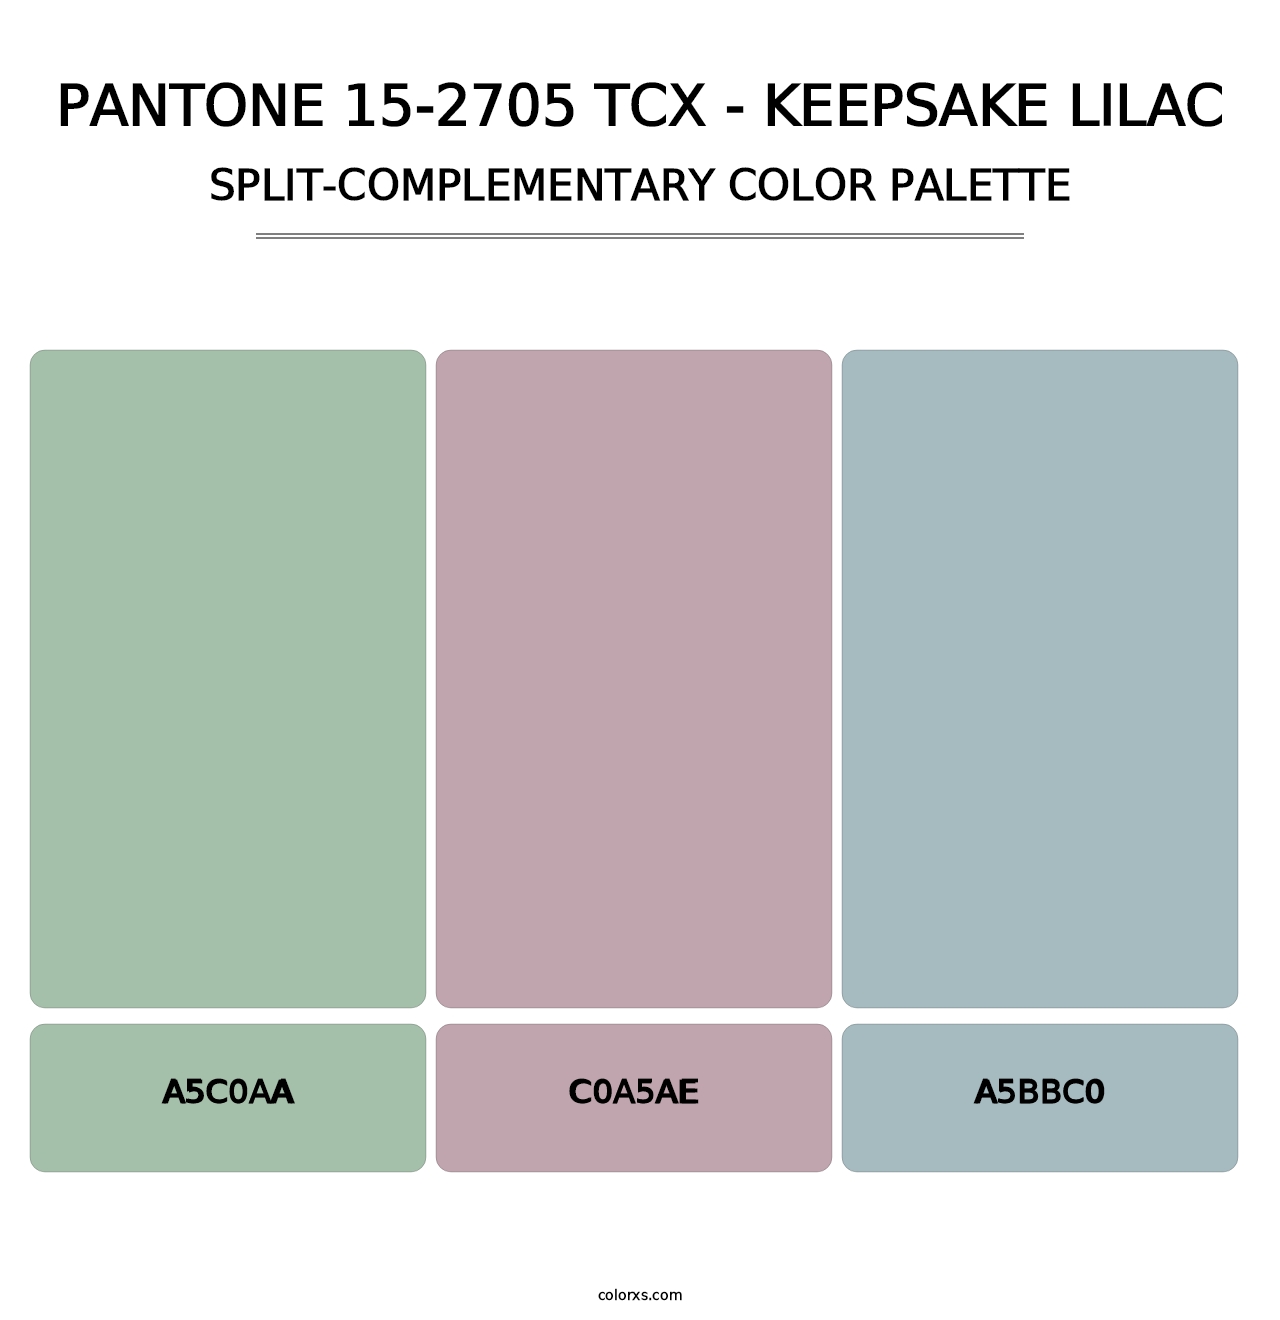 PANTONE 15-2705 TCX - Keepsake Lilac - Split-Complementary Color Palette